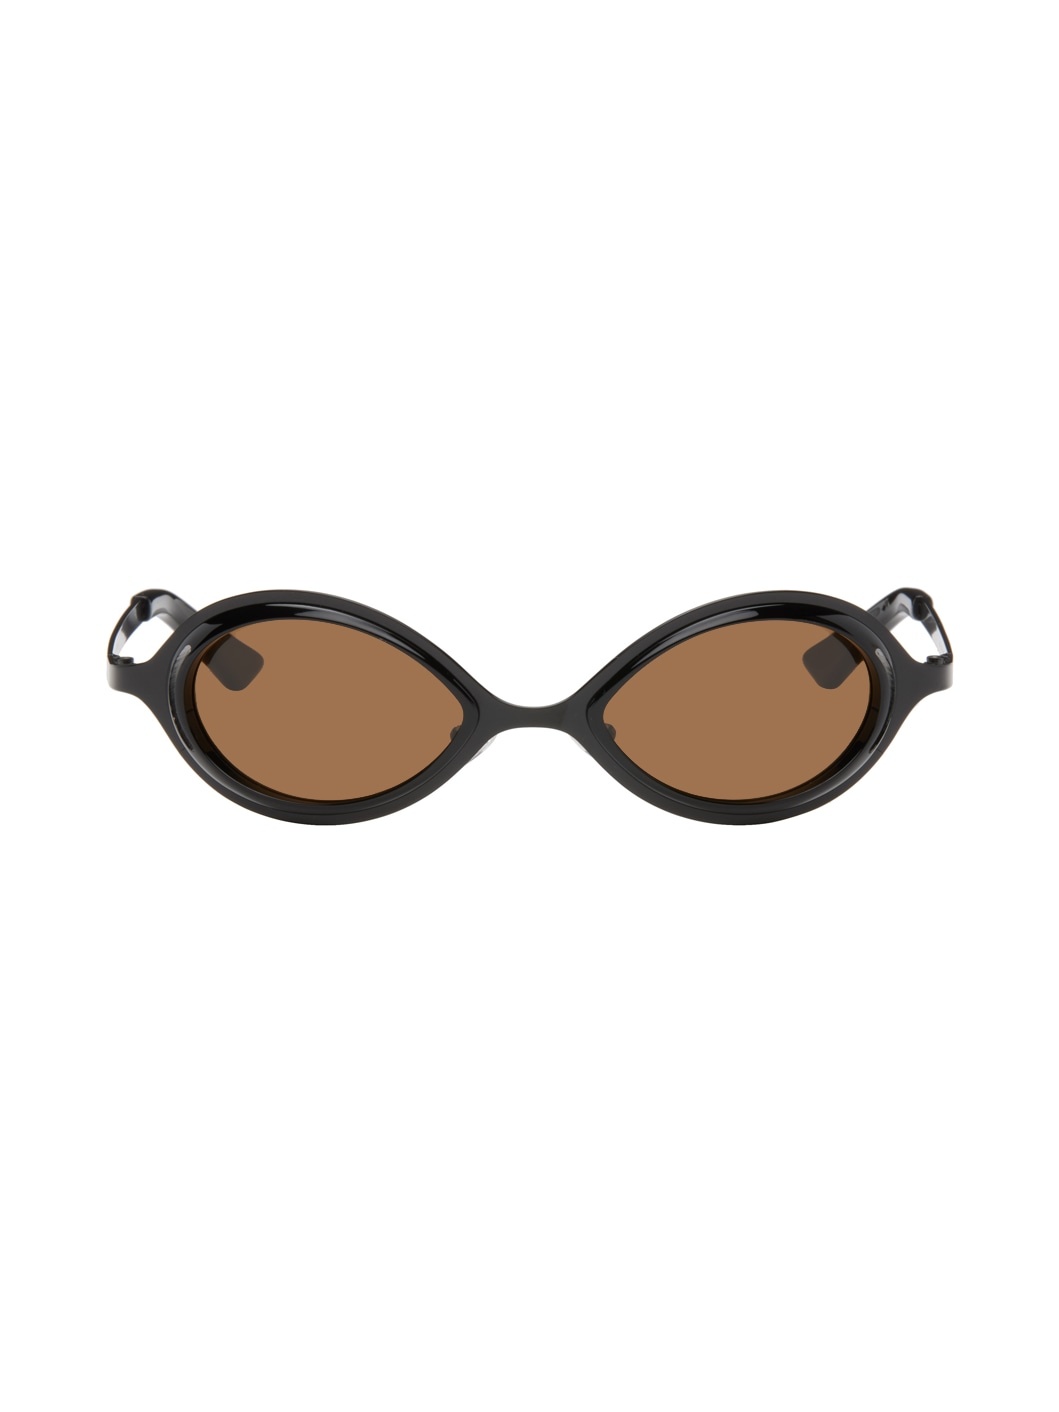 SSENSE Exclusive Black 'The Goggle' Sunglasses - 1